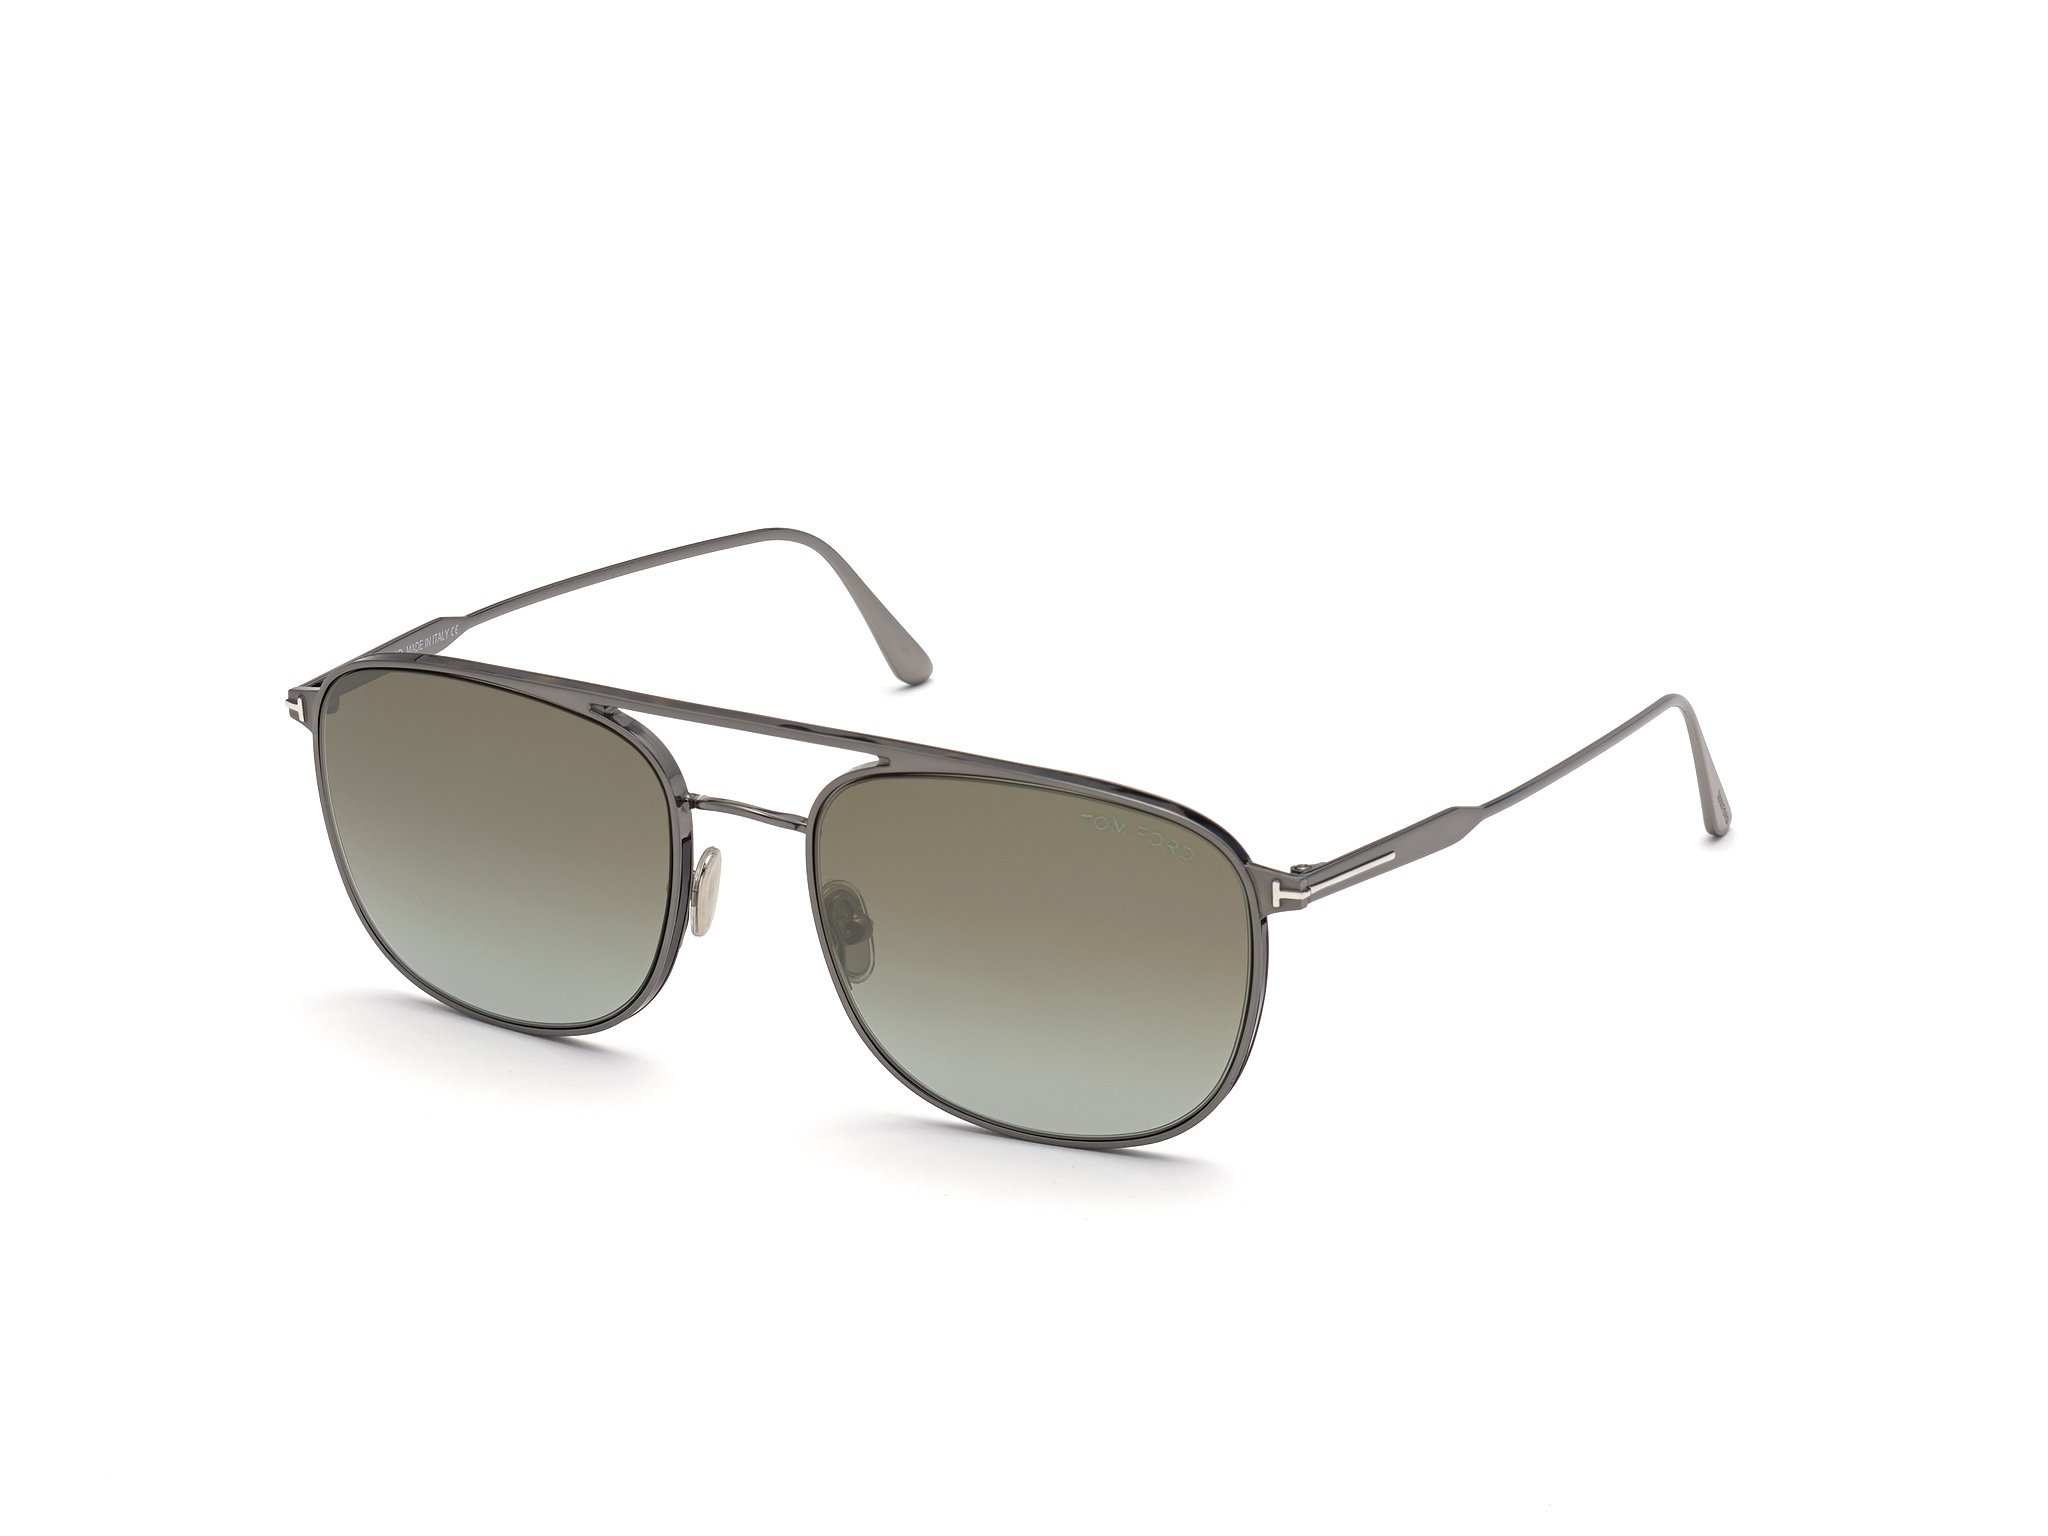 Das Bild zeigt die Sonnenbrille Jake FT0827 von der Marke Tom Ford in grau